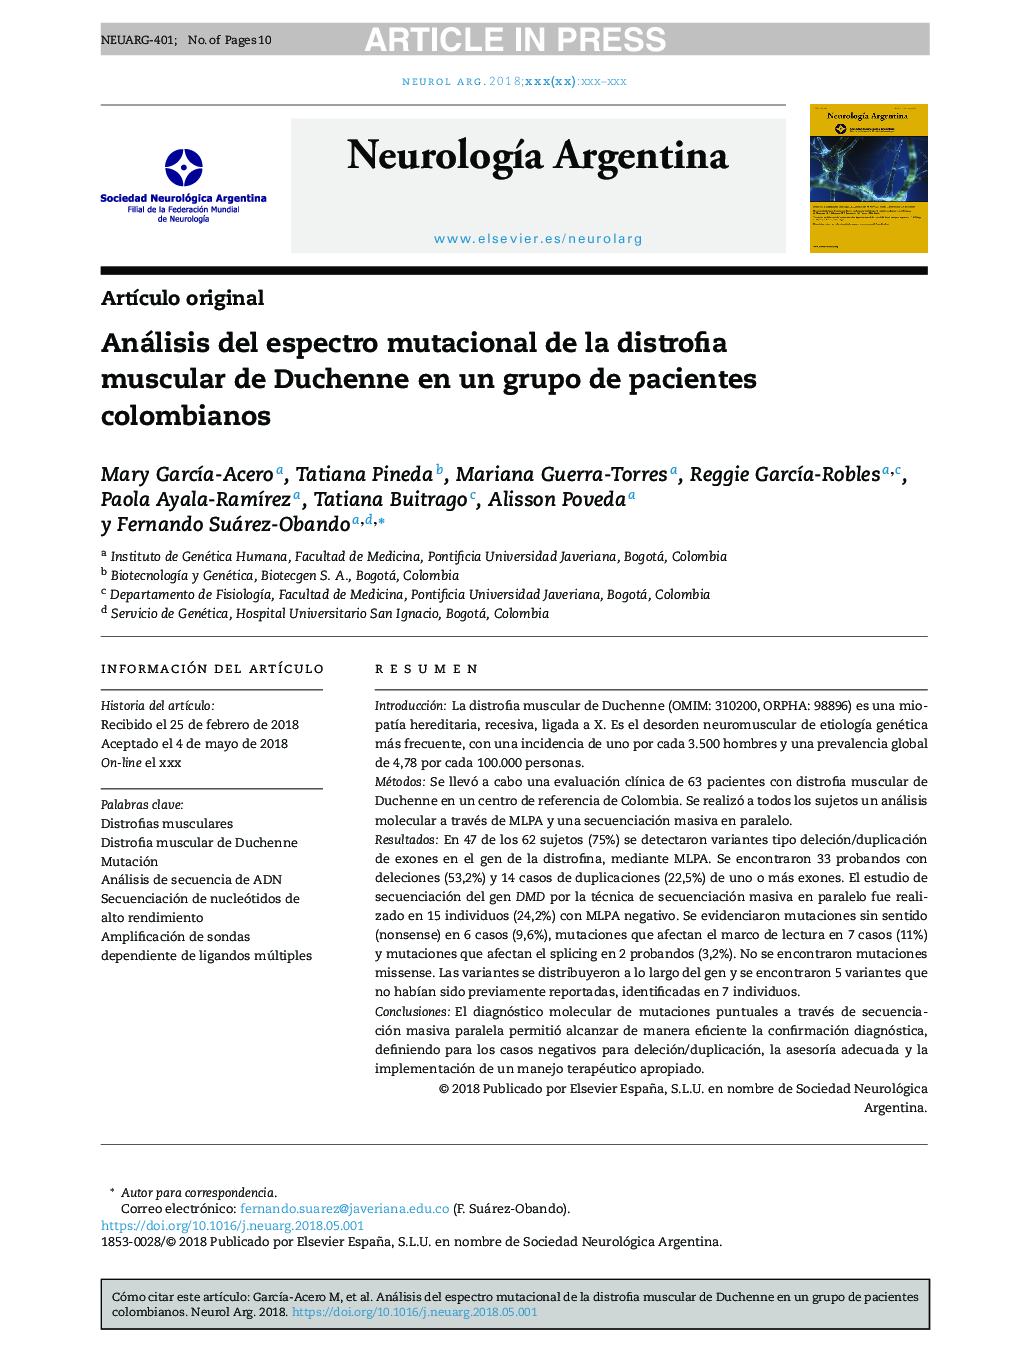 Análisis del espectro mutacional de la distrofia muscular de Duchenne en un grupo de pacientes colombianos